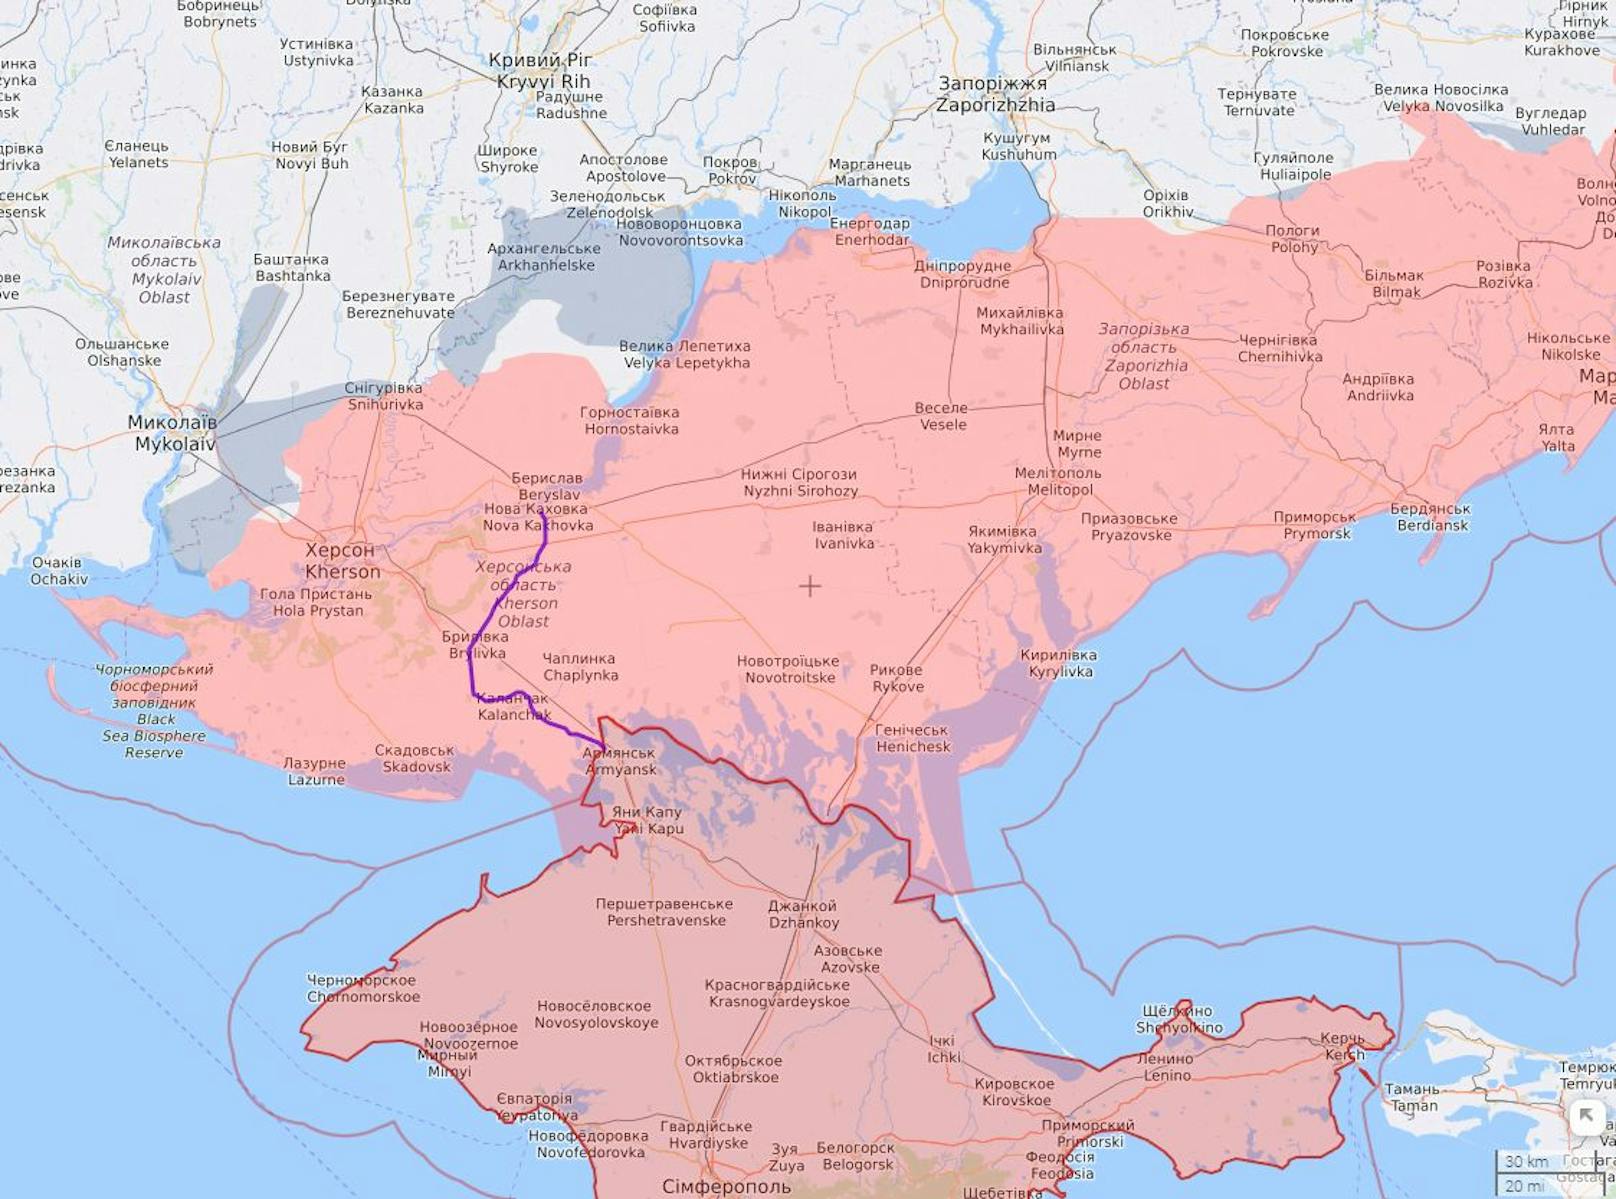 Russisch-besetzte Gebiete der Südukraine mit Stand 18. Oktober 2022. Die Stadt Cherson liegt westlich, der Großteil der gleichnamigen Oblast östlich des Flusses Dnipro nahe der Krim.